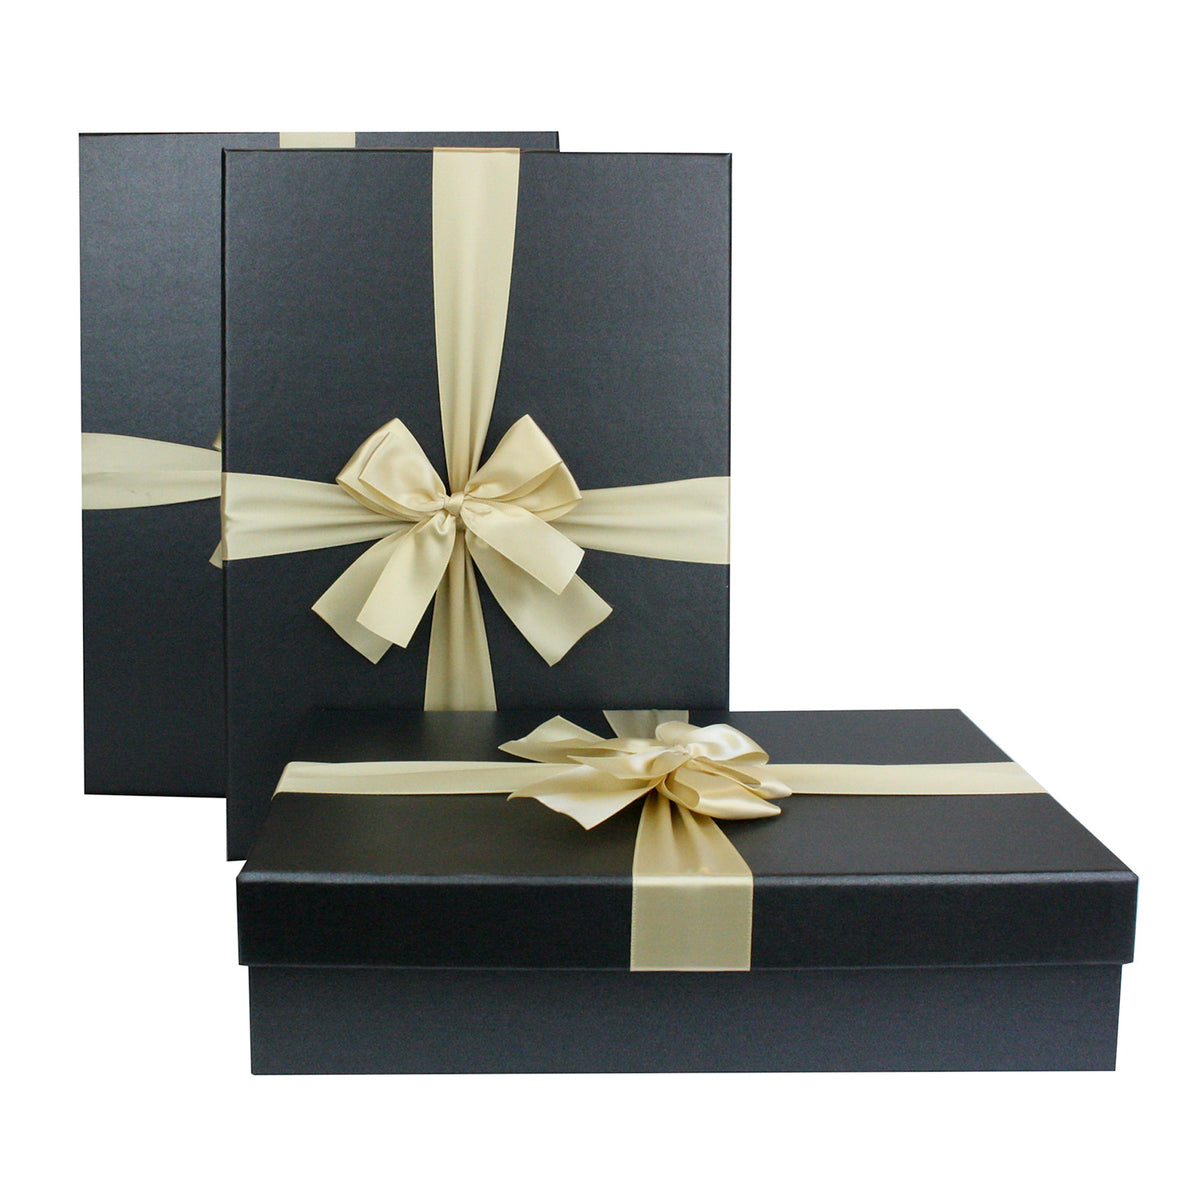 Stylish Luxury Black Gift Boxes in Three Sizes